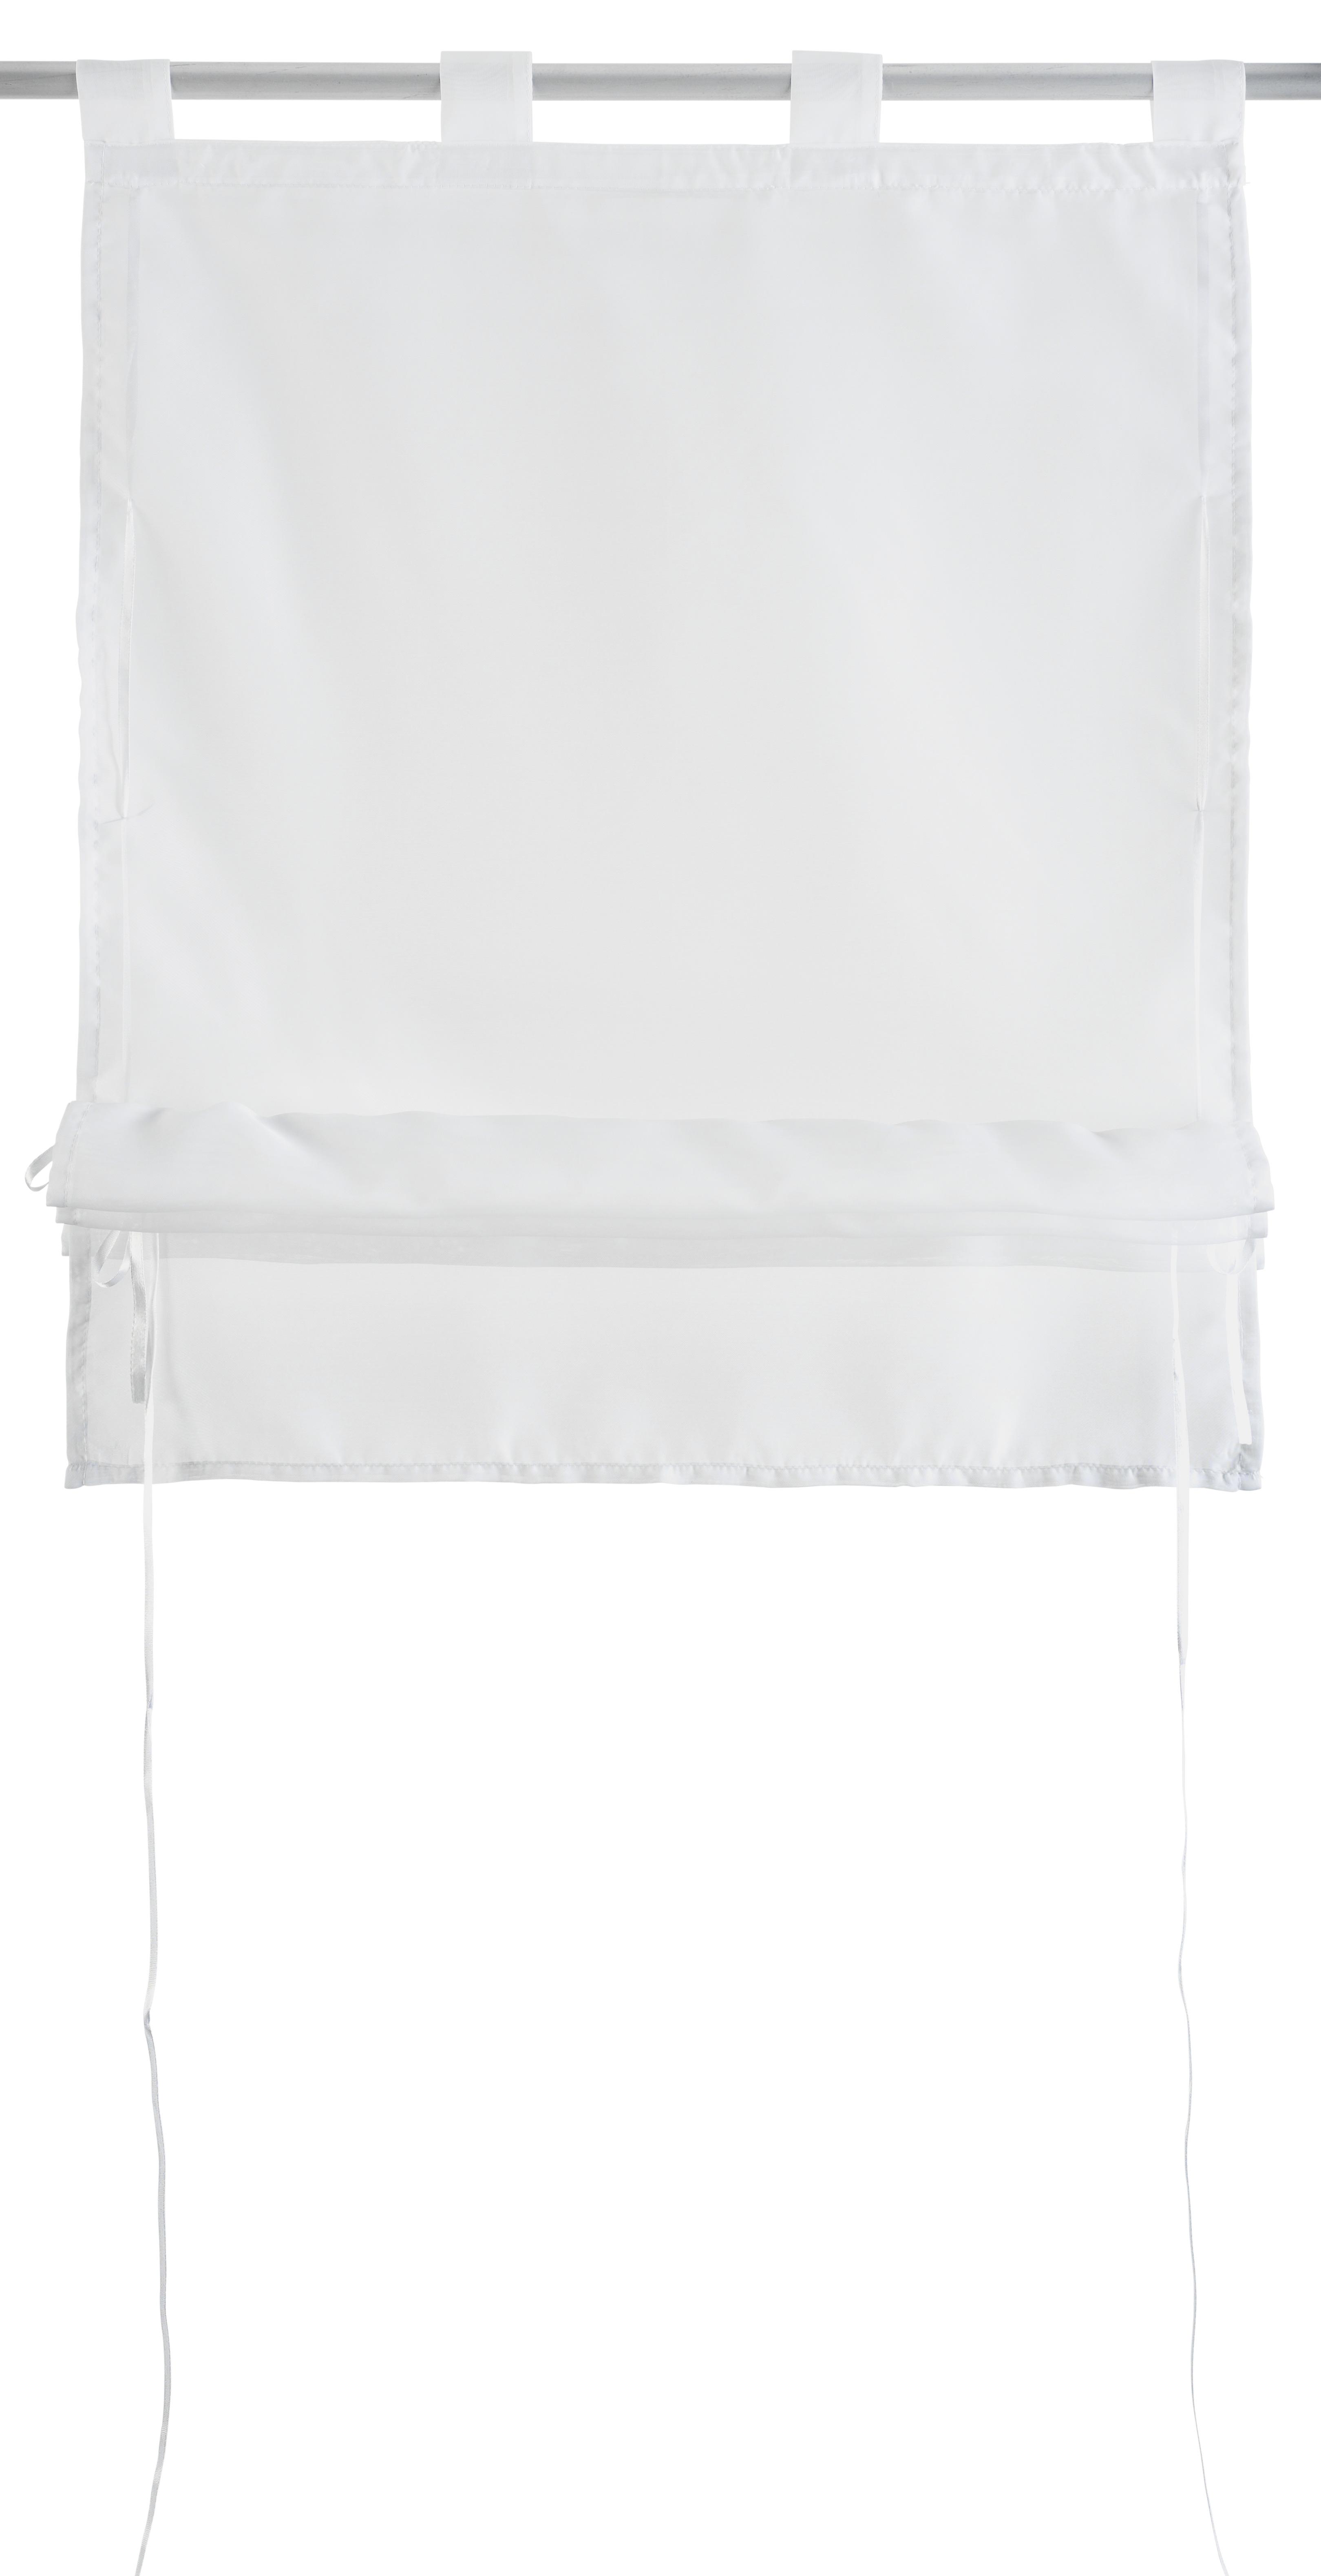 Bändchenrollo Nina in Weiß ca. 60x140cm - Weiß, Textil (60/140cm) - Modern Living